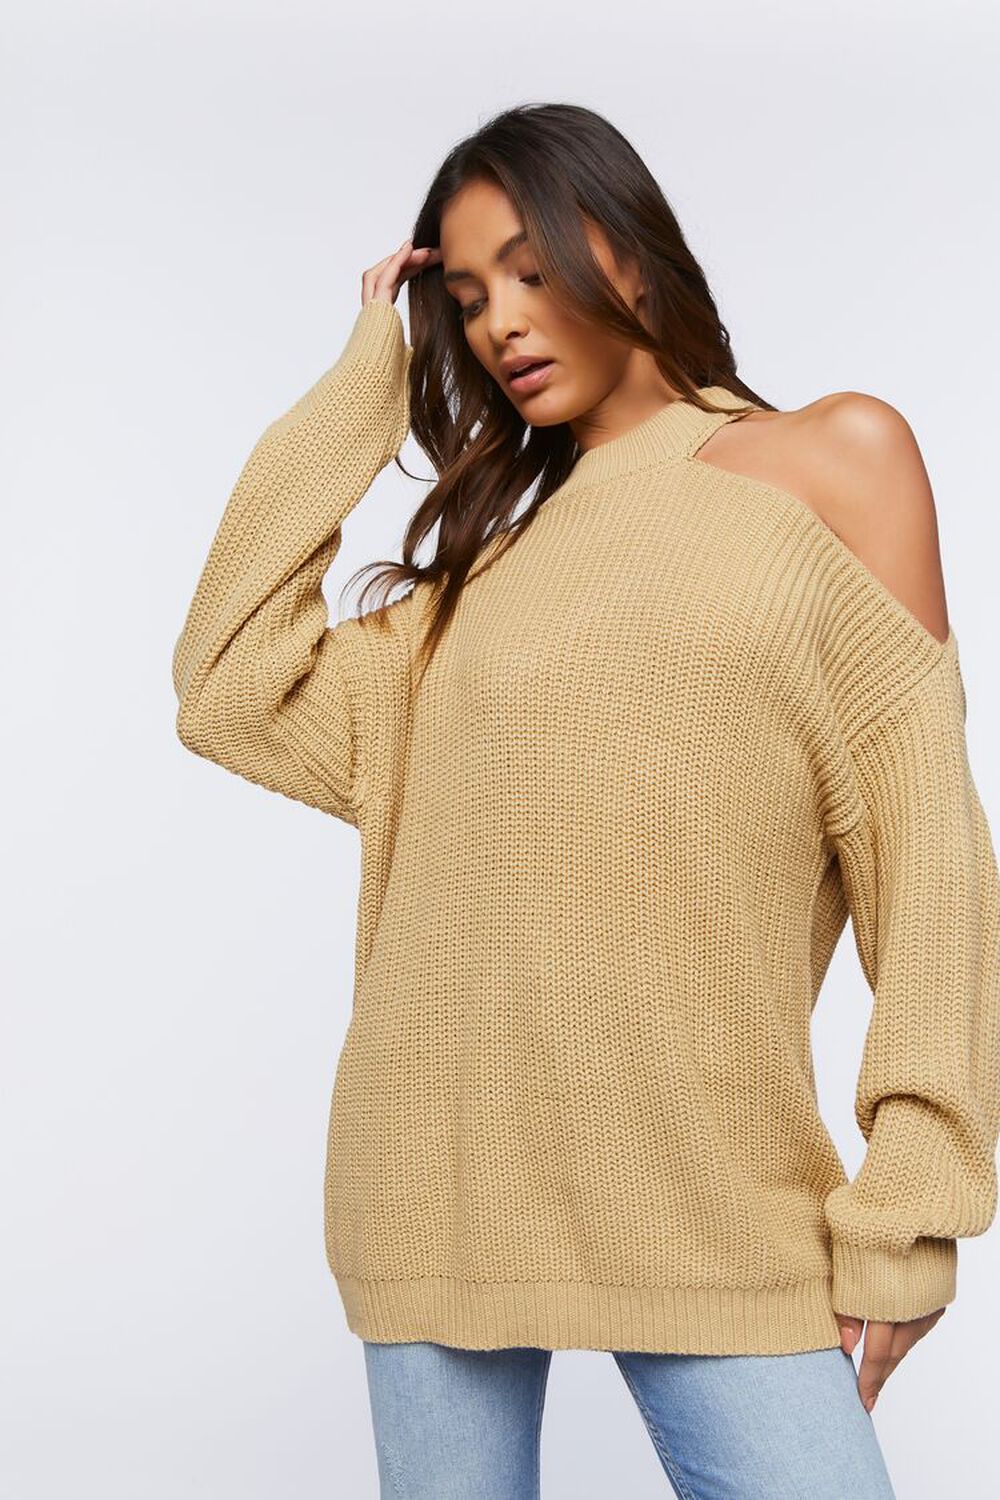 BEIGE Asymmetrical Open-Shoulder Sweater, image 1